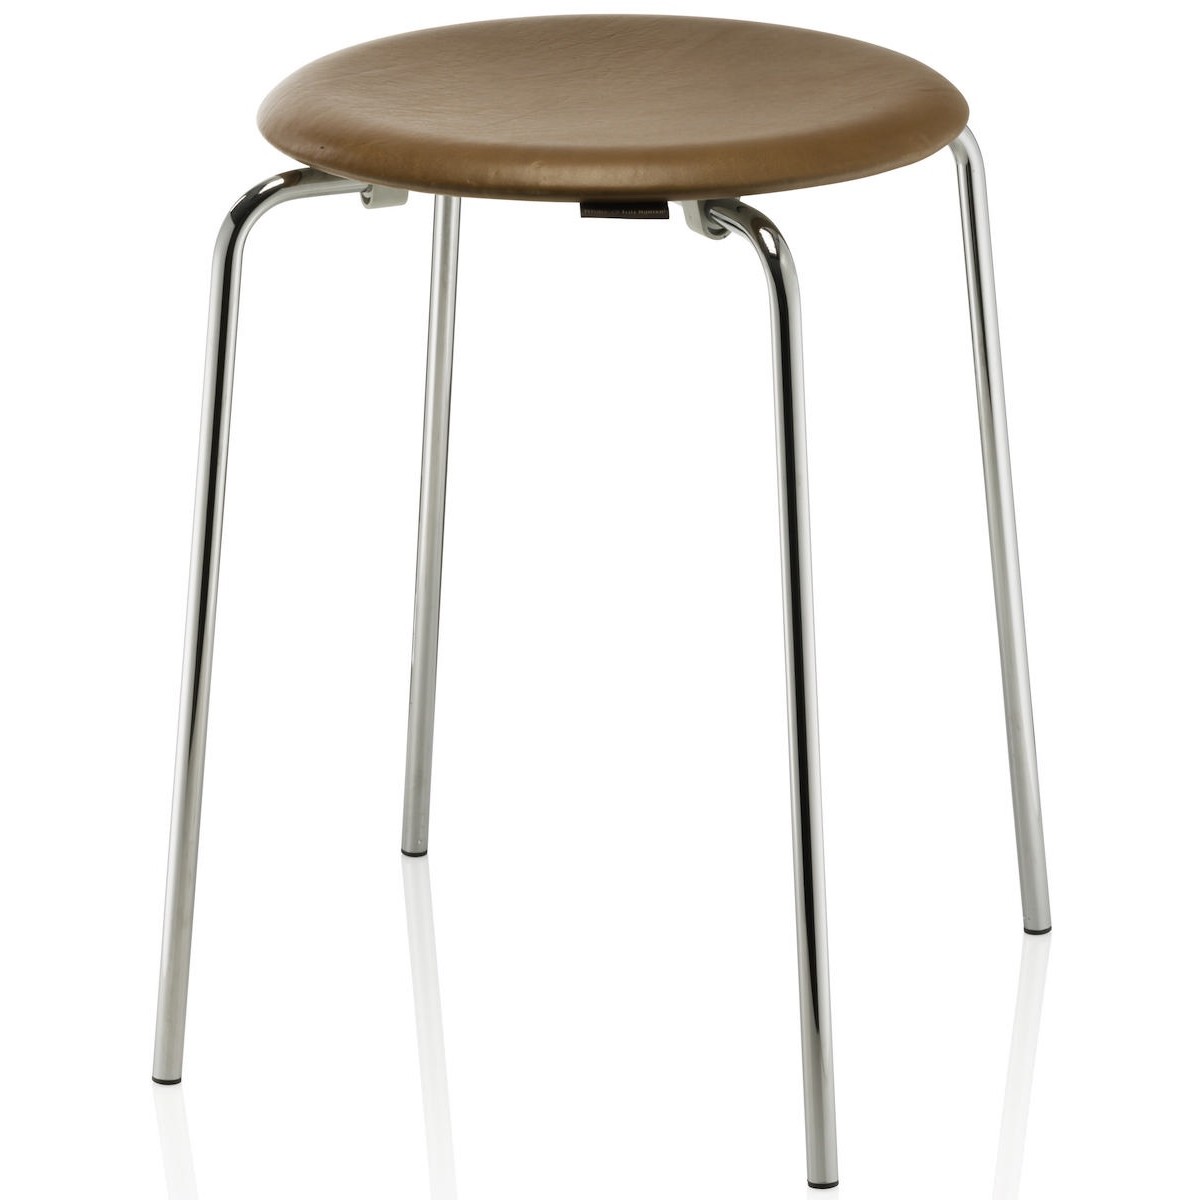 Dot stool – Walnut Wild leather / chrome